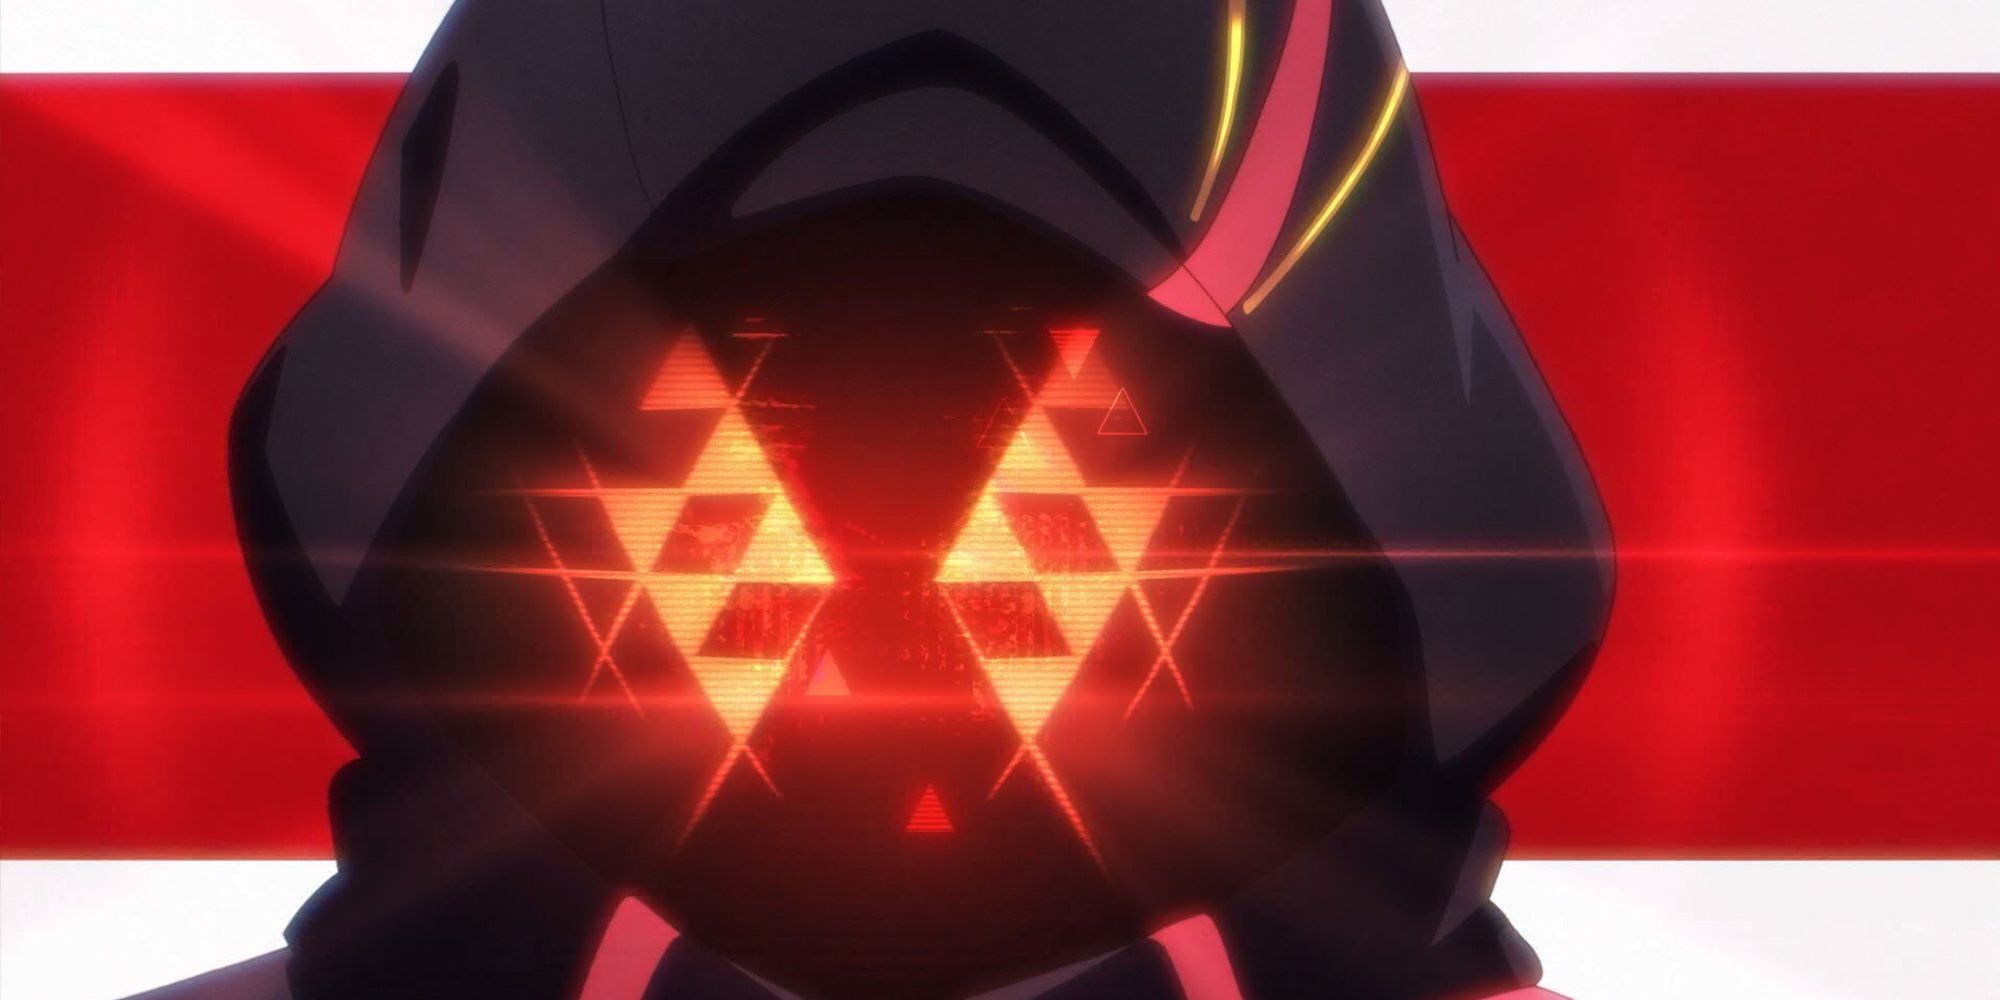 Topeng Hologram Nexus Scarlet Seperti Dilihat Dalam Pembukaan Anime